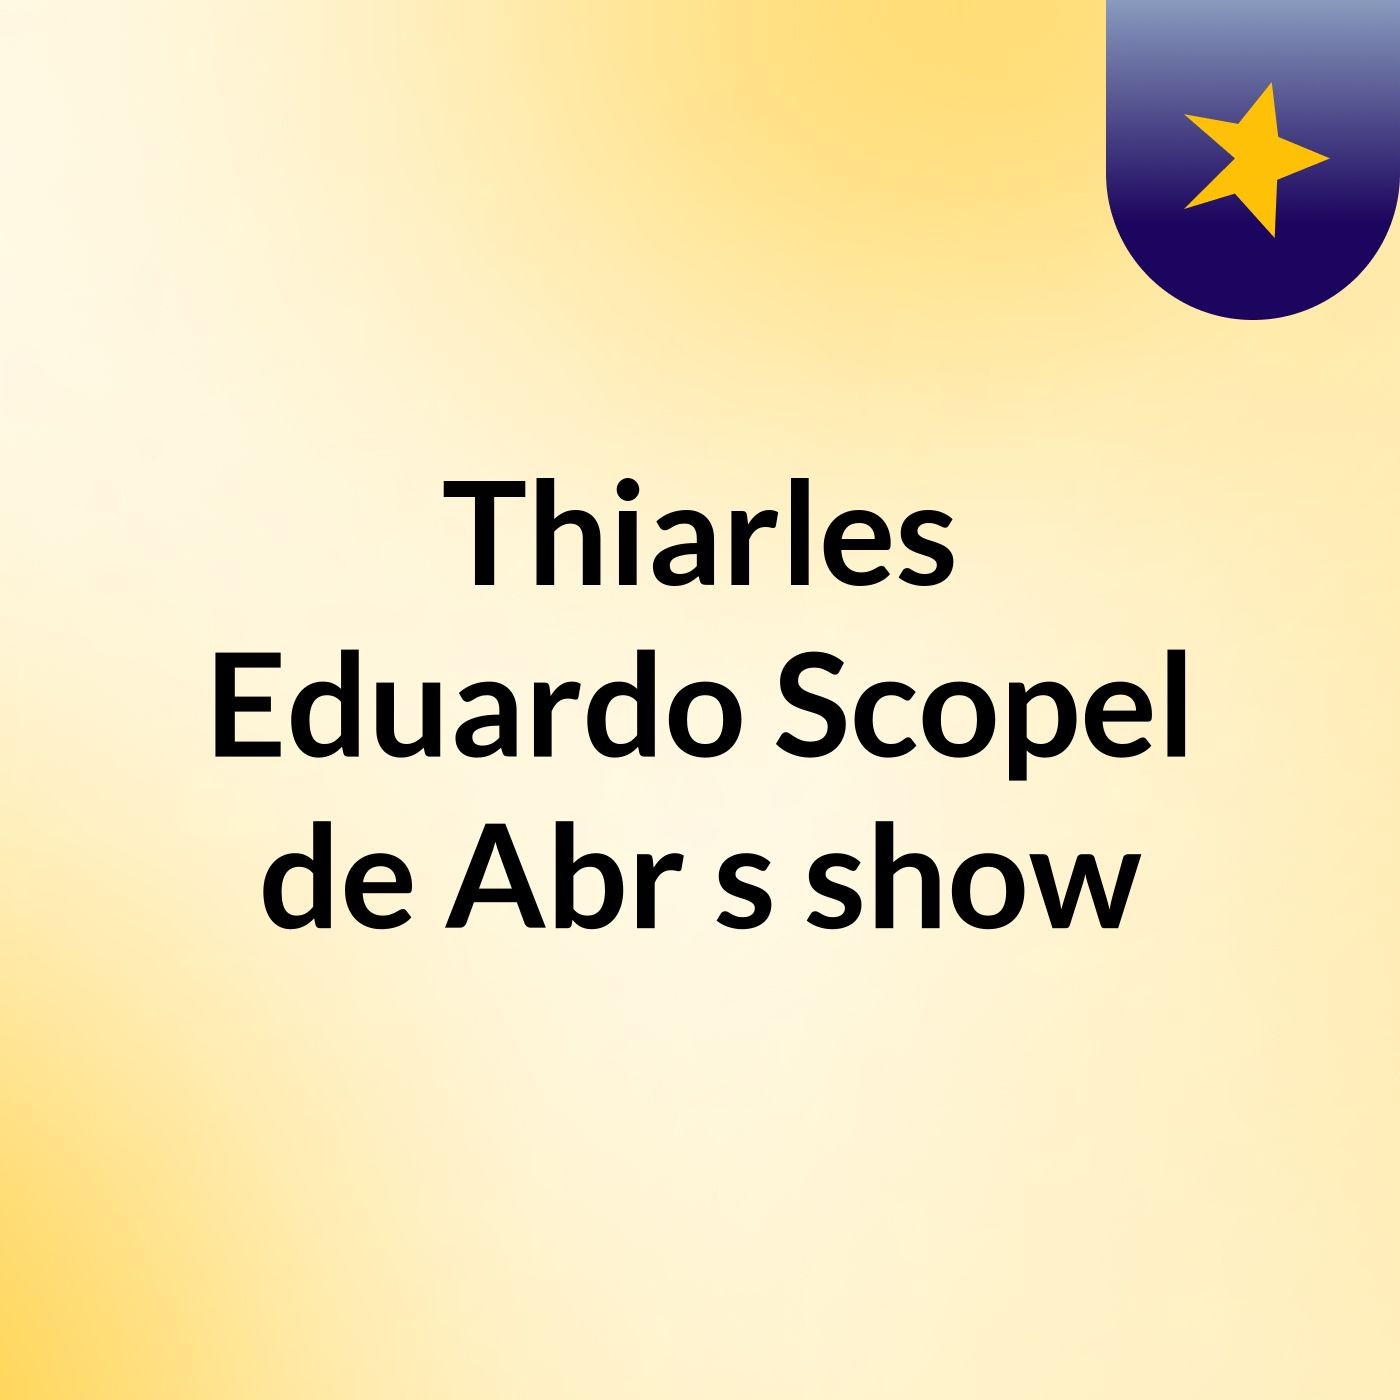 Thiarles Eduardo Scopel de Abr's show